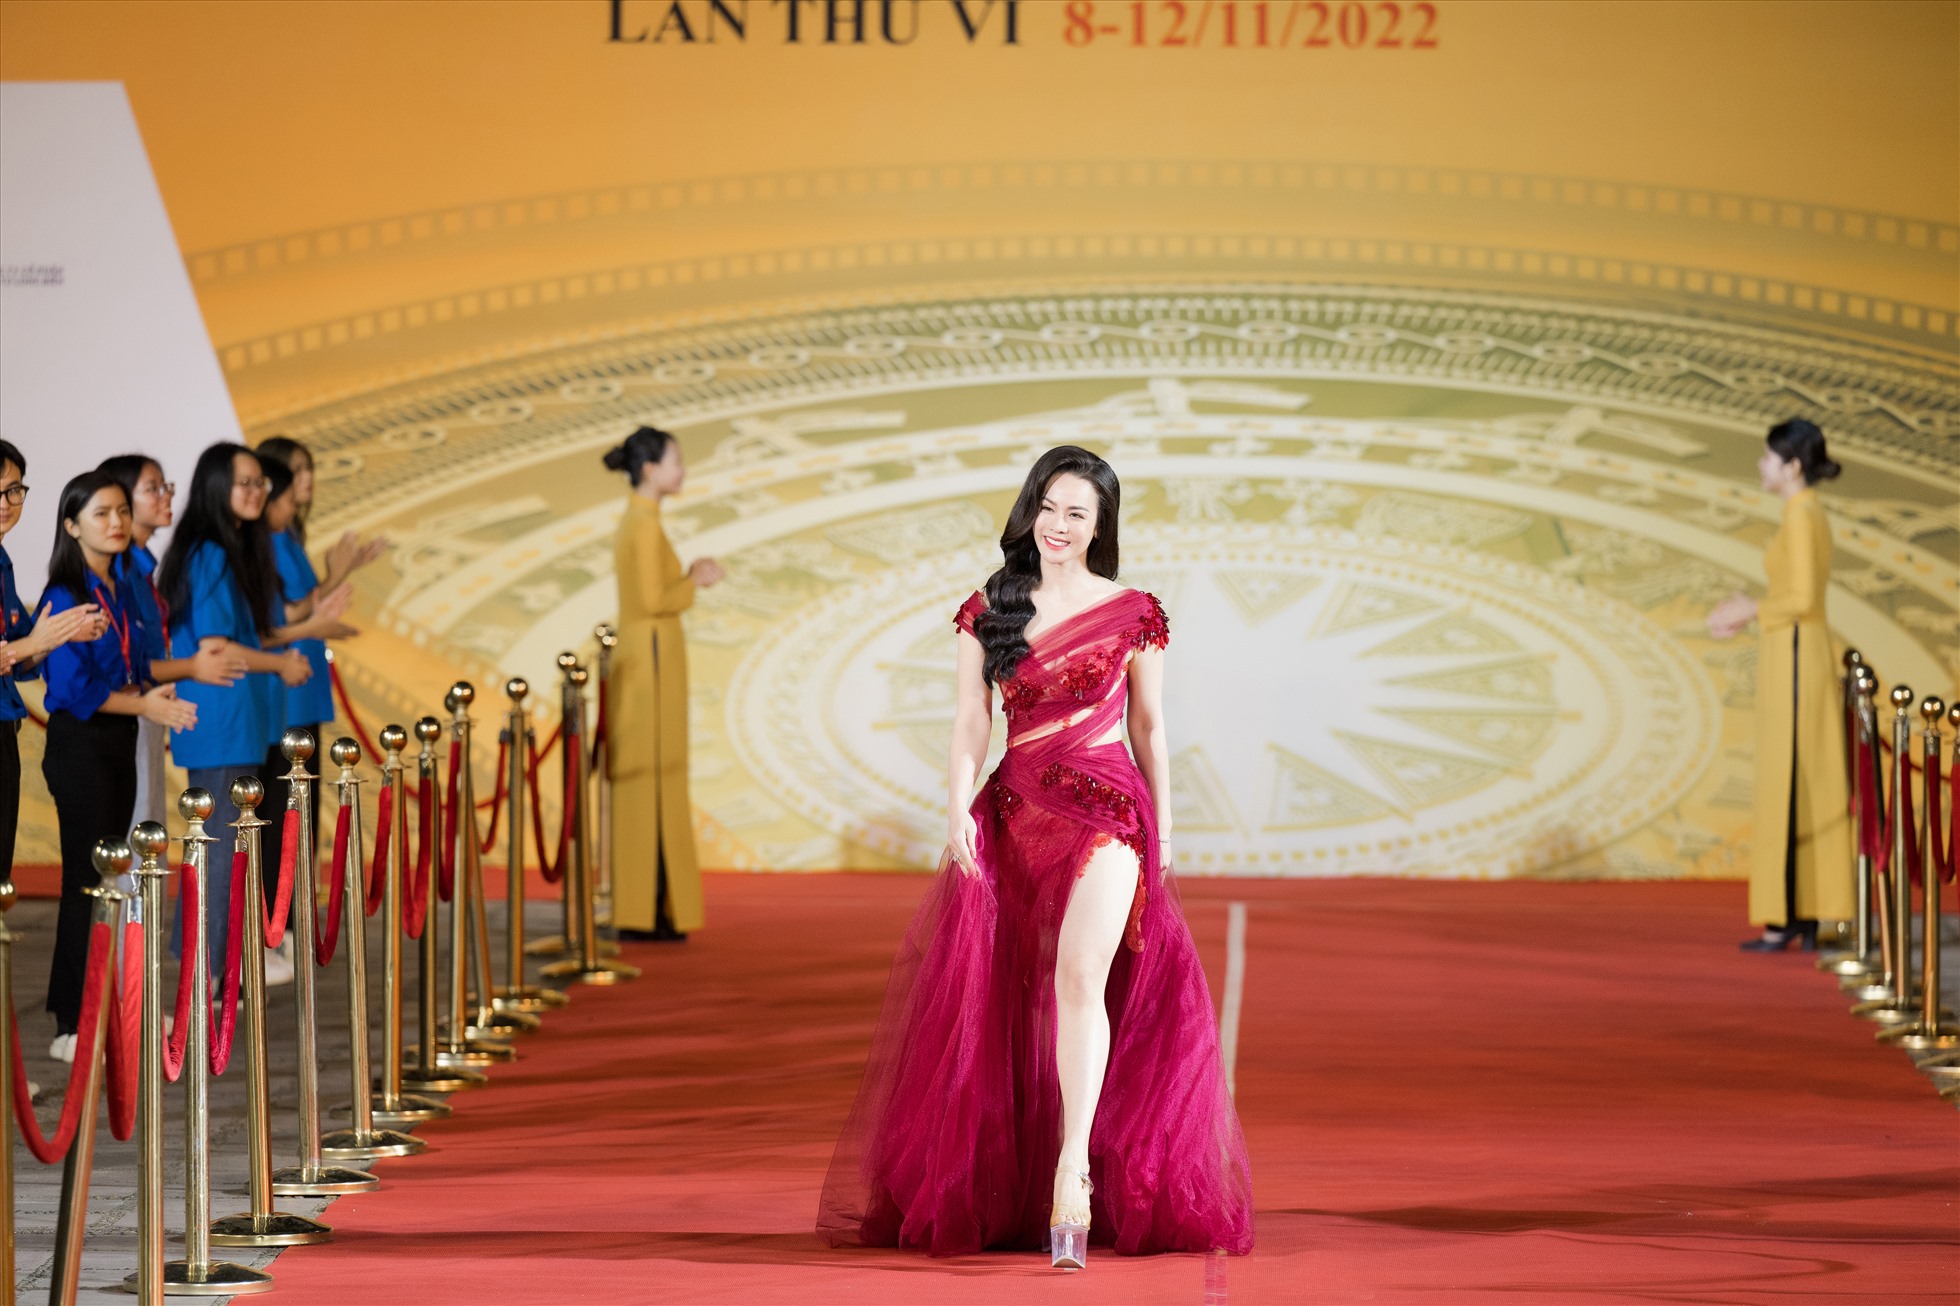 Nhật Kim Anh sải bước trên thảm đỏ. Nữ diễn viên đã chiếm trọn cảm tình của khán giả với các bộ phim truyền hình theo đề tài phim xưa.